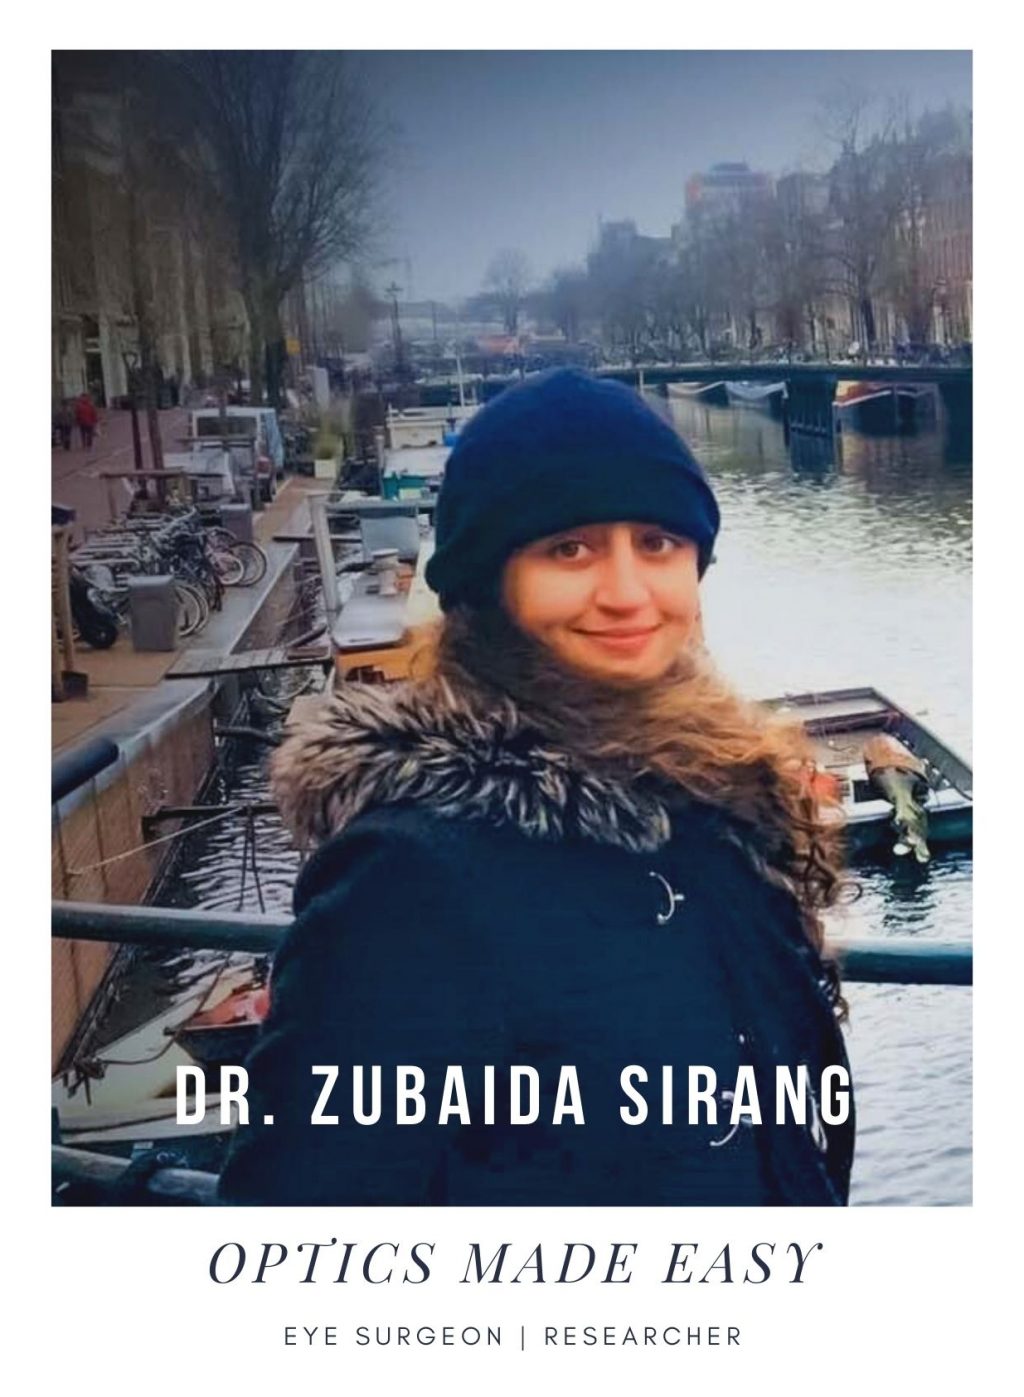 Dr. Zubaida Sirang